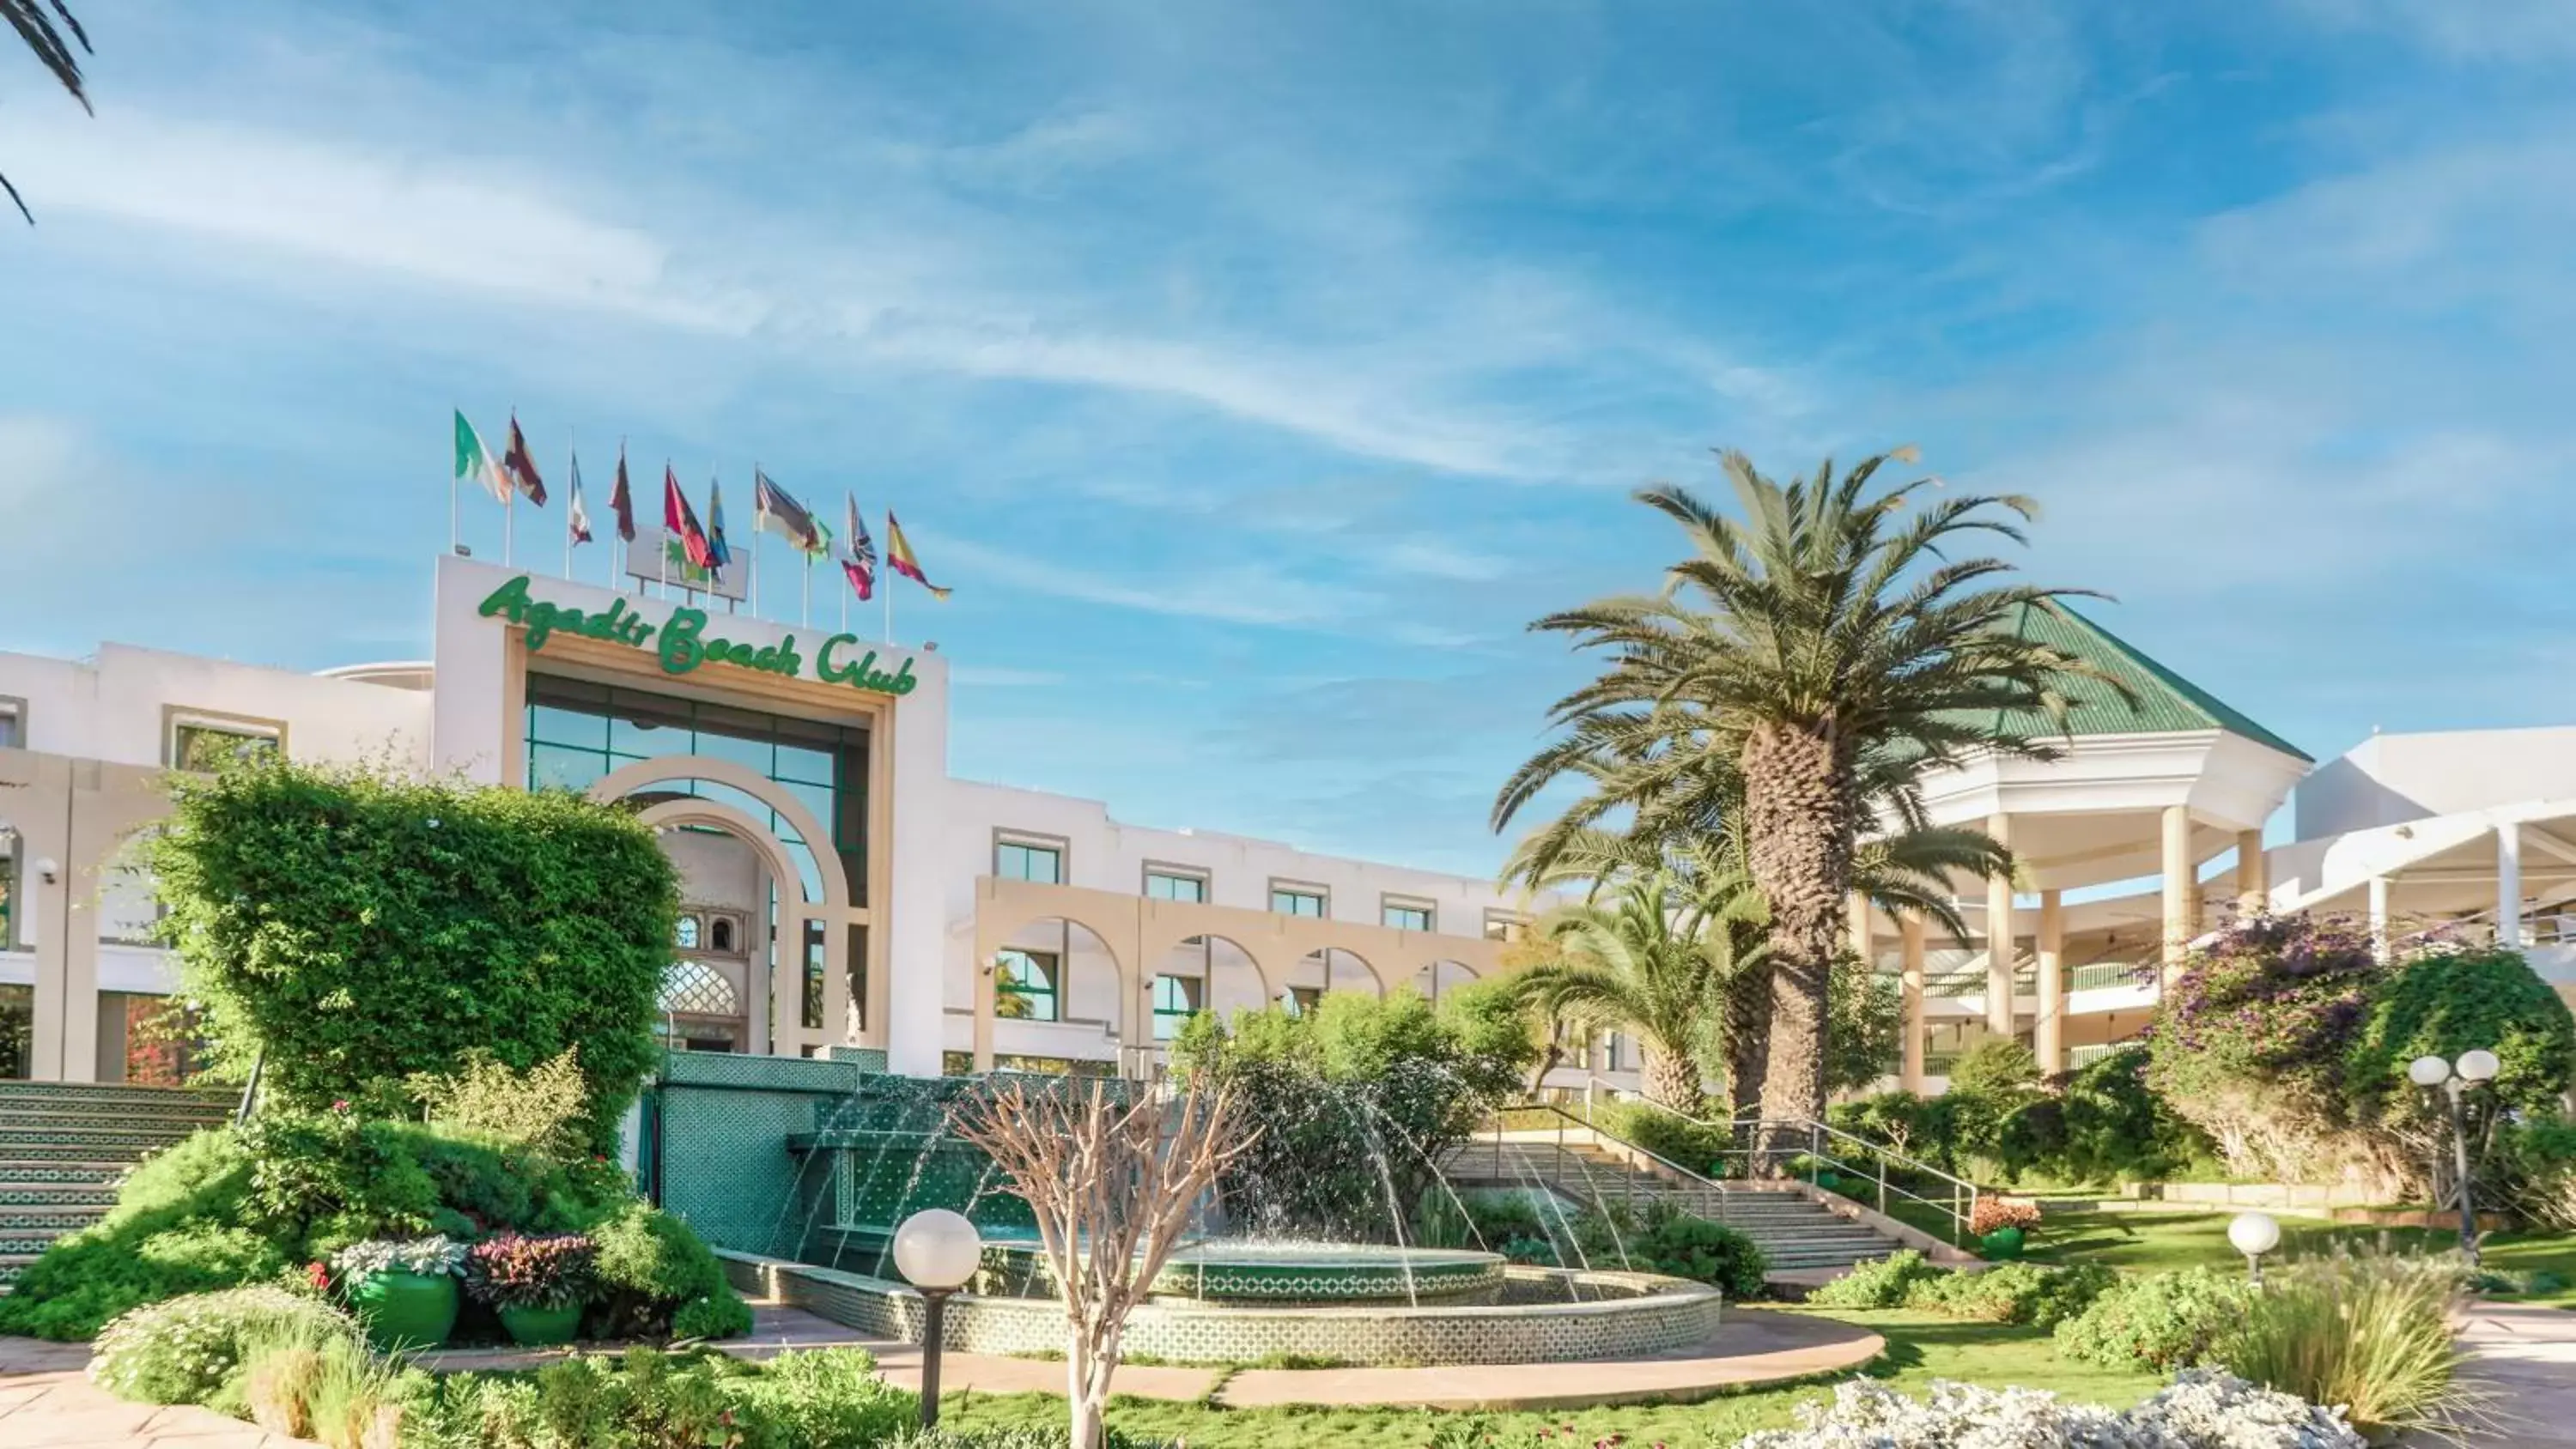 Facade/entrance, Property Building in Agadir Beach Club